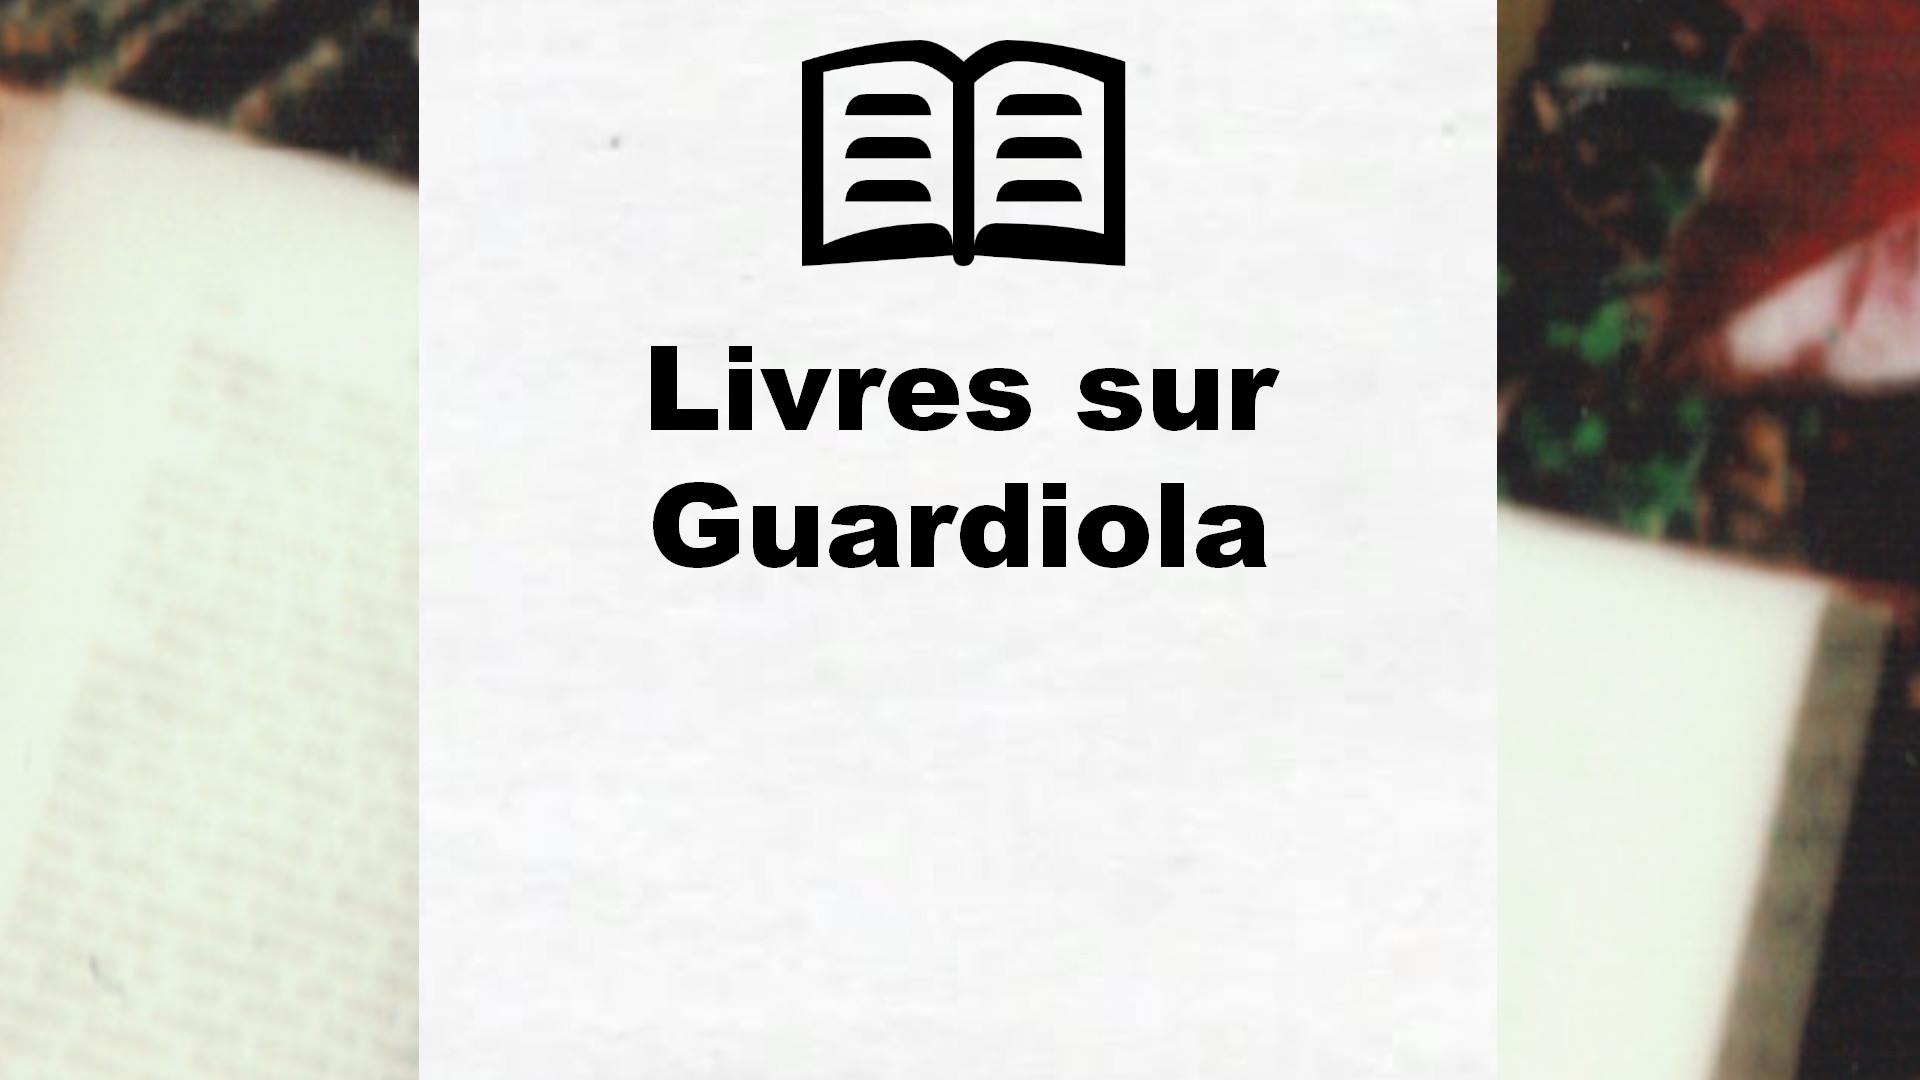 Livres sur Guardiola